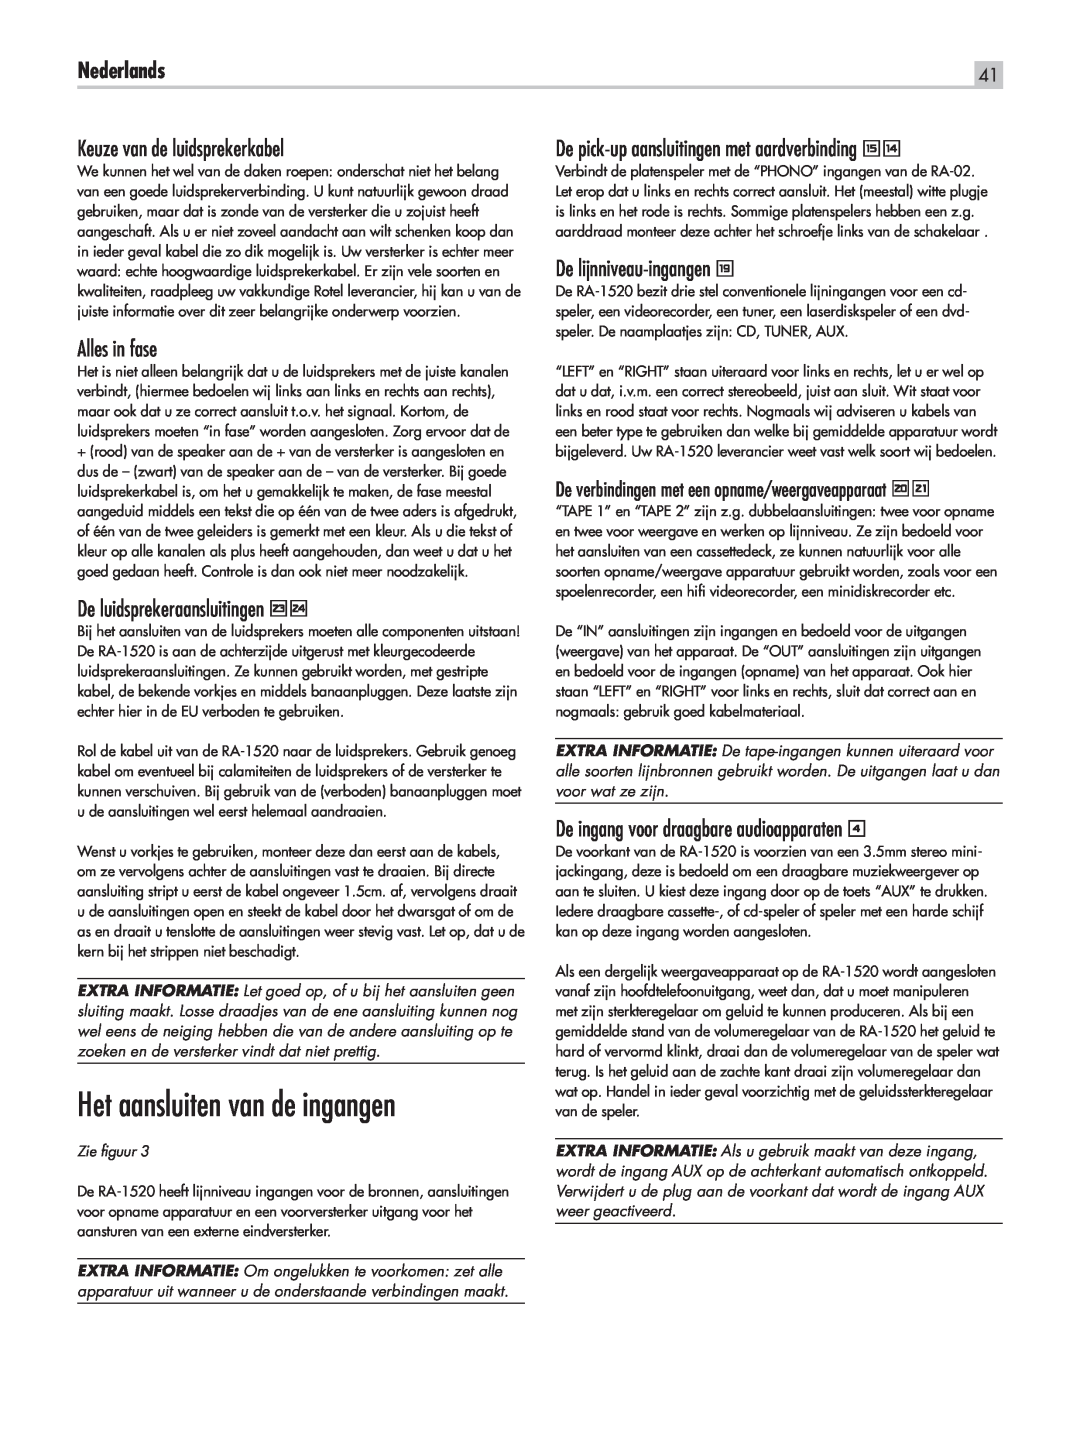 Rotel RA-1520 owner manual Het aansluiten van de ingangen, Nederlands, Keuze van de luidsprekerkabel, Alles in fase 